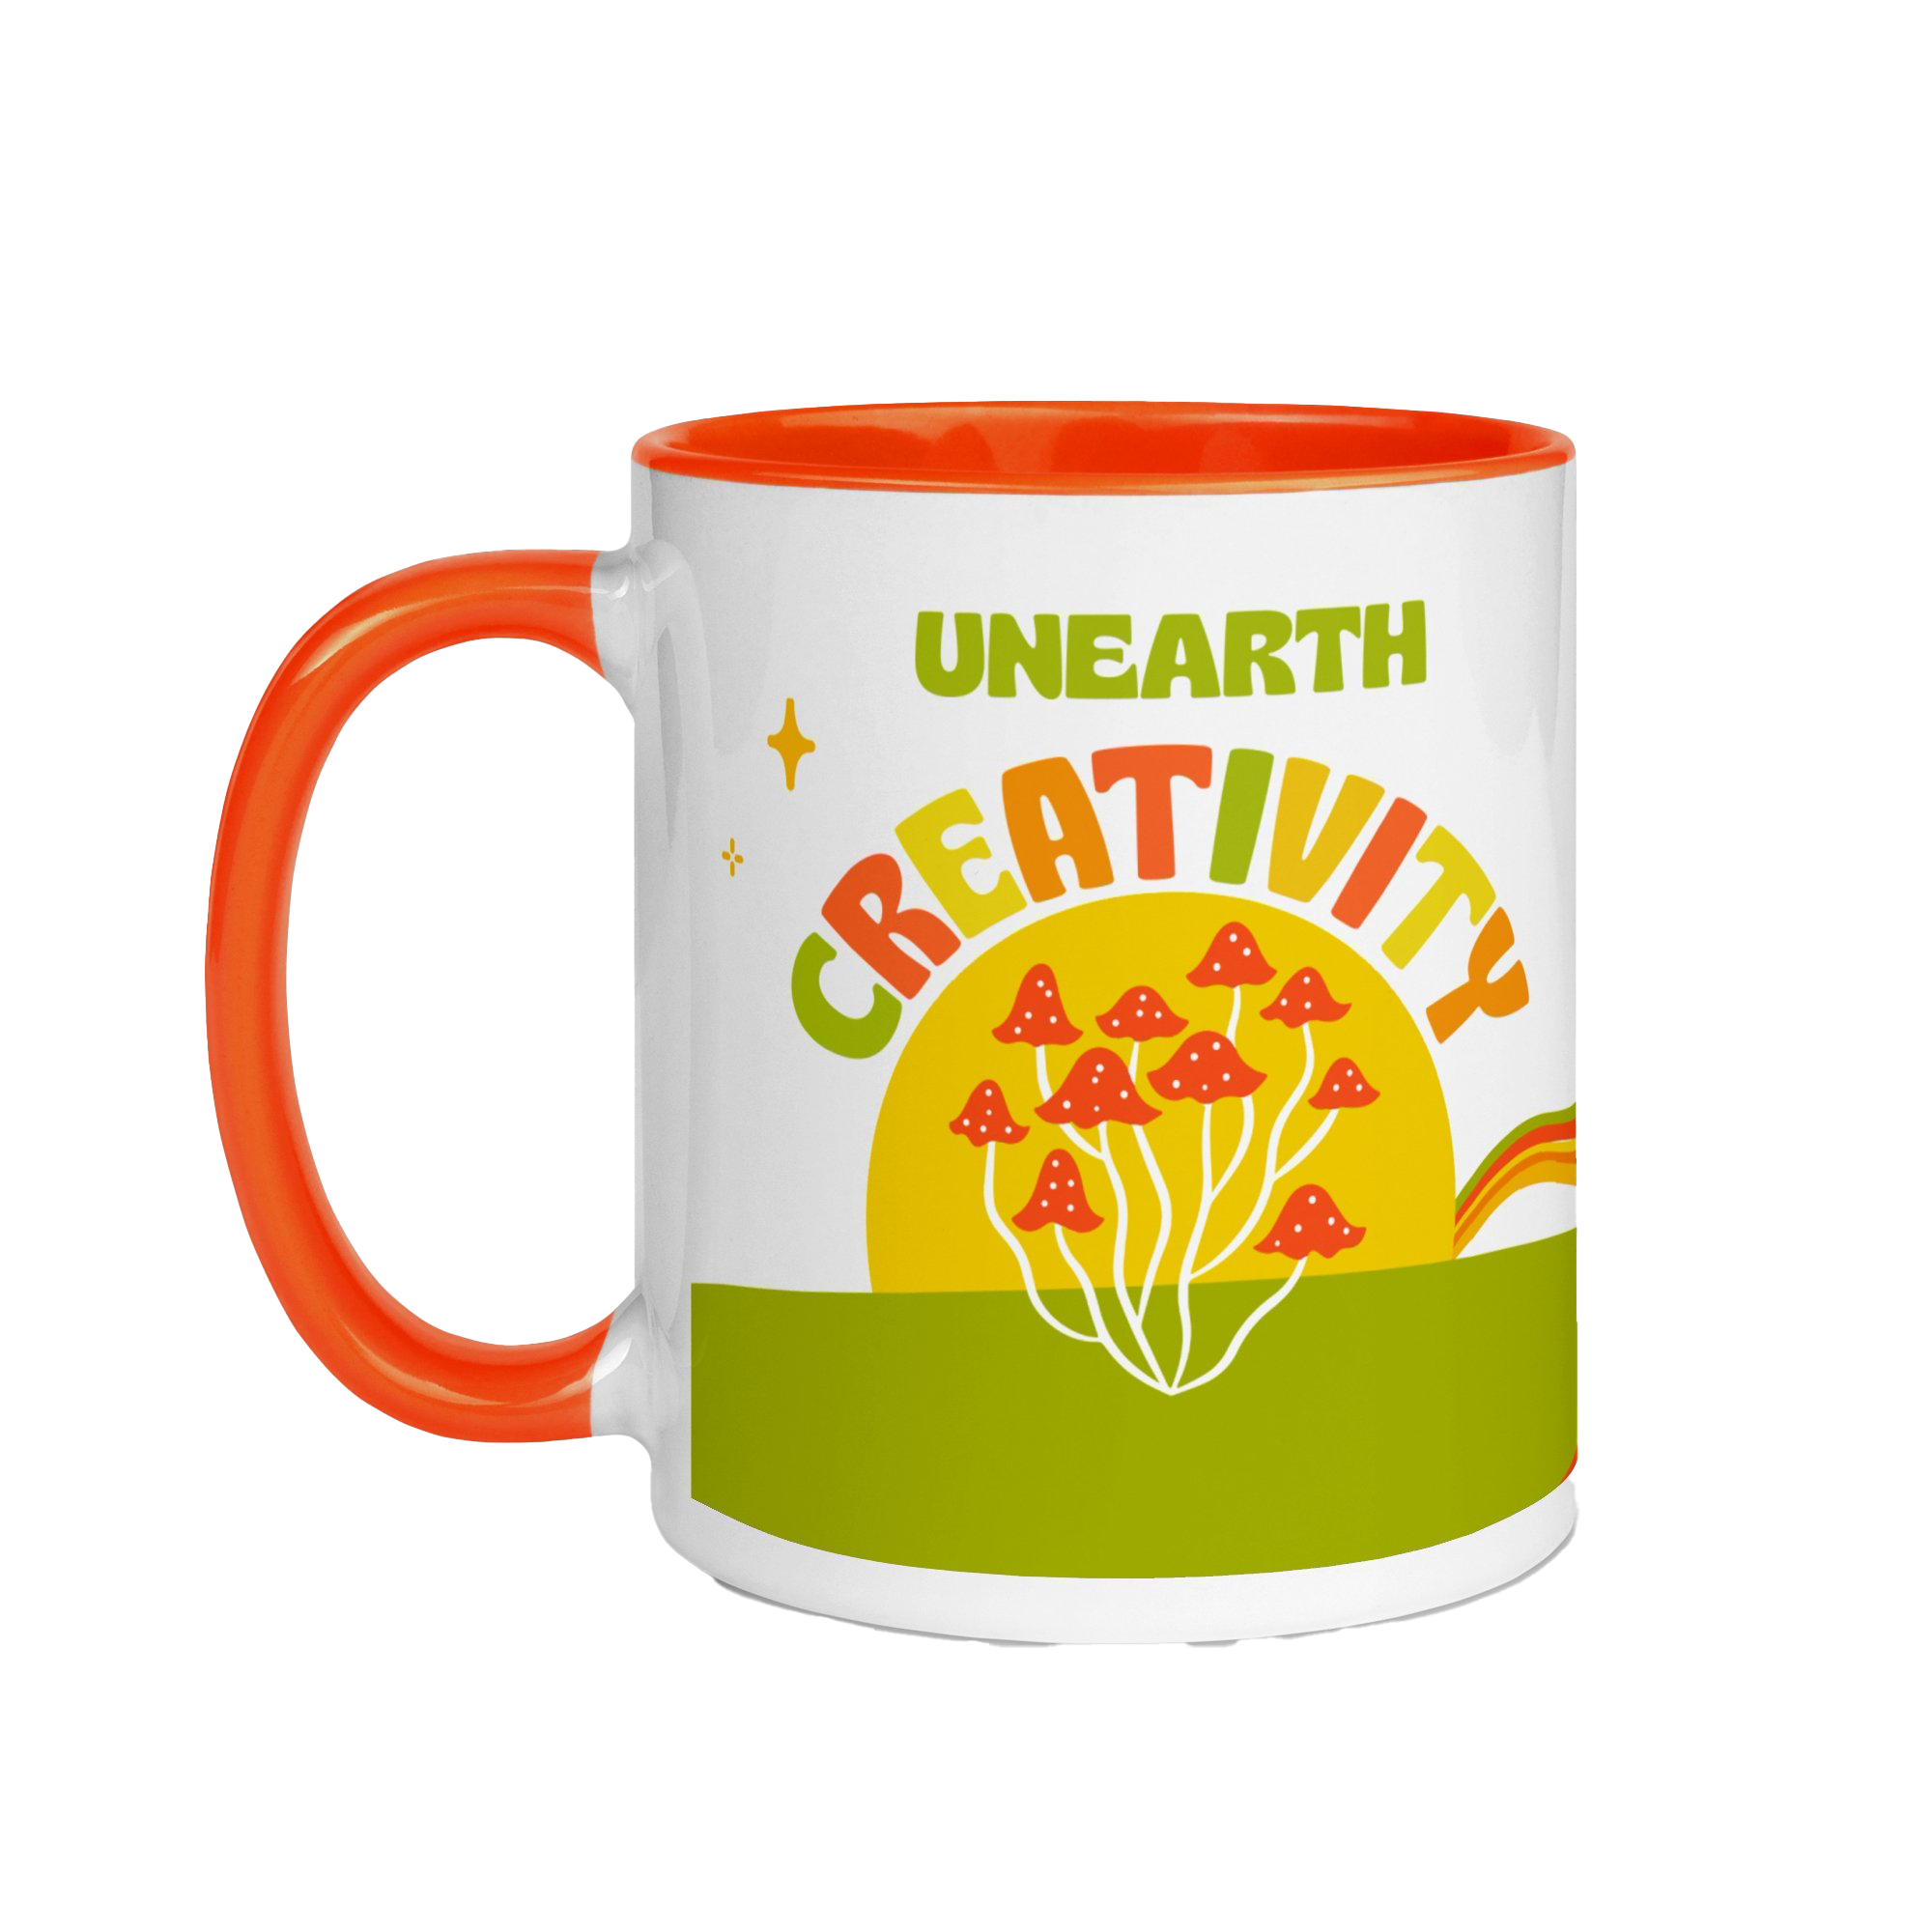 Unearth Creativity Mug